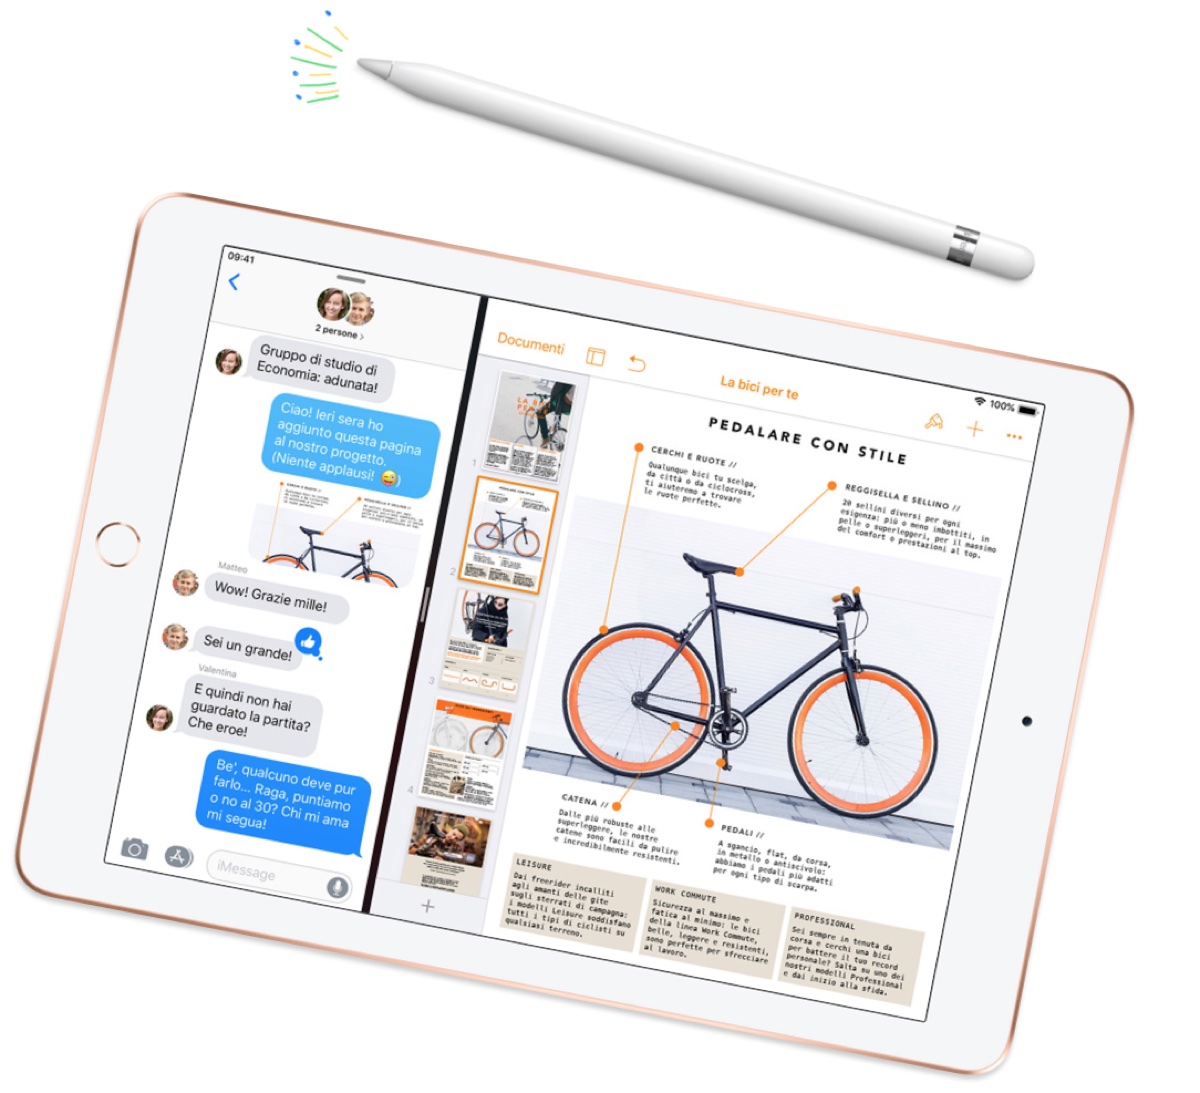 iPad 2019: come sarà, prezzo, caratteristiche e data d’uscita